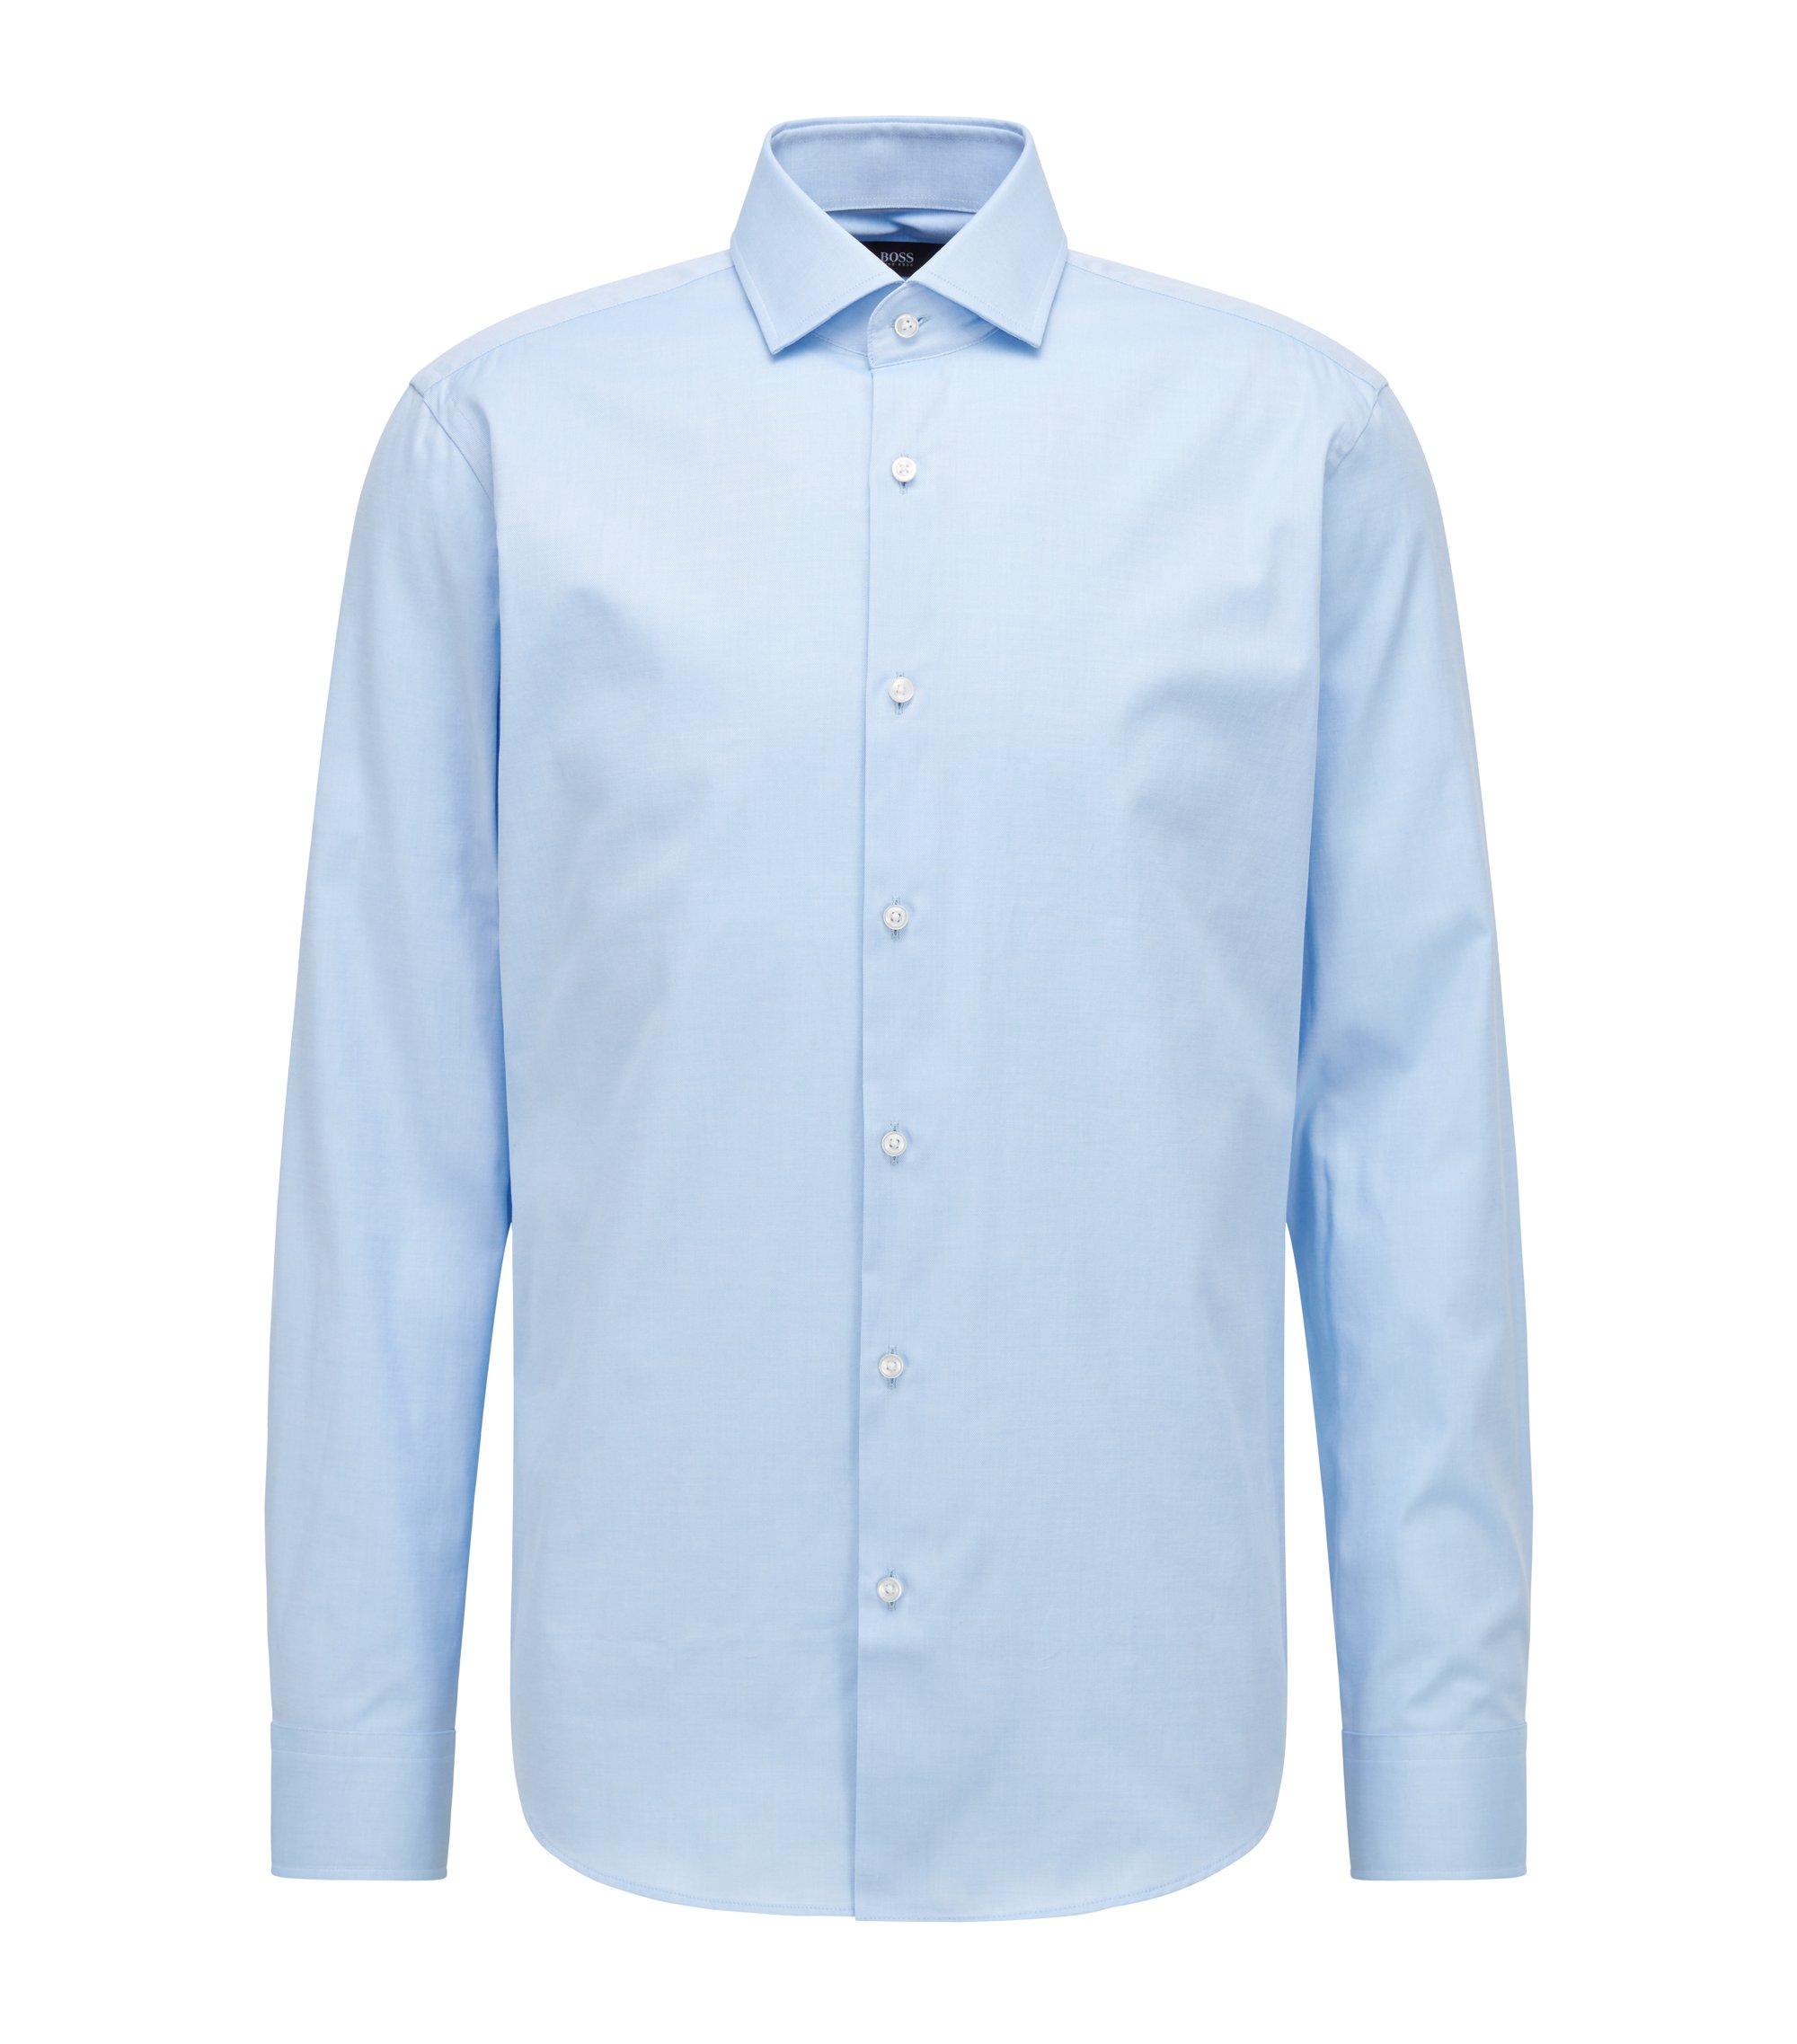 Hugo Boss Men's "Jason" Slim Fit Plaid Long Sleeve Dress Shirt Sz 15 17 17.5 18 